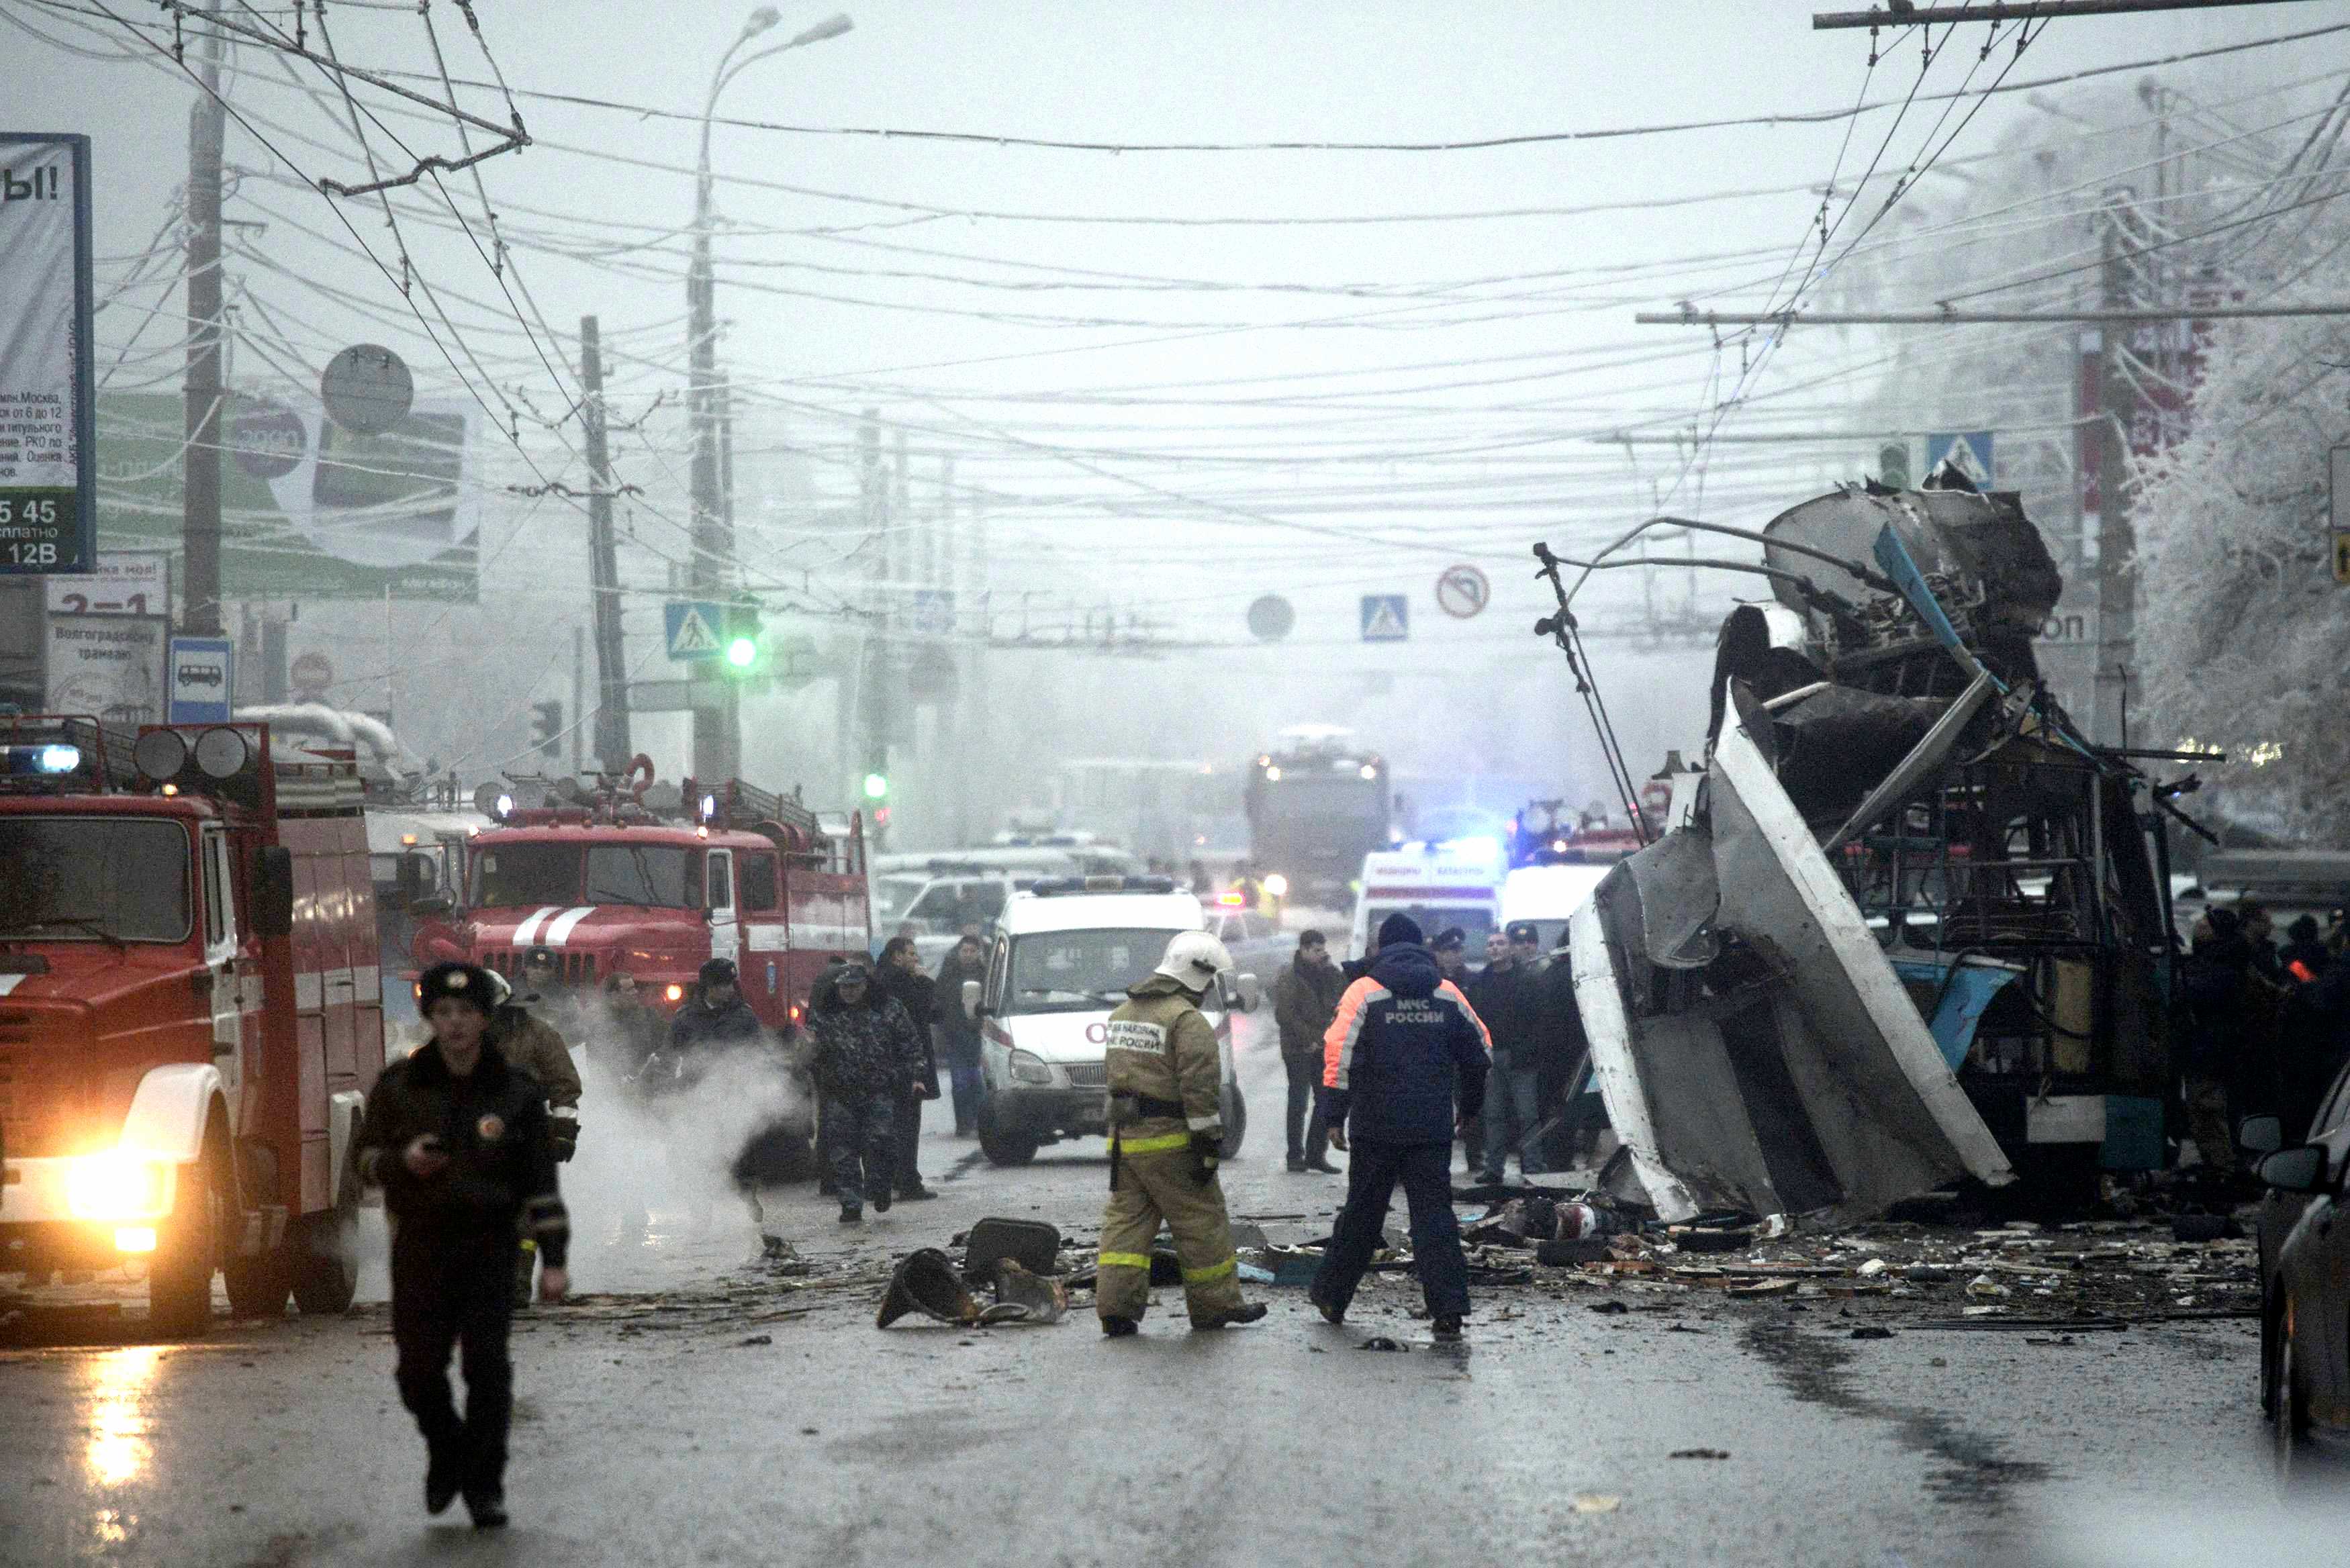 4 декабря 2006. Теракт в троллейбусе в Волгограде 30 декабря. Взрыв троллейбуса в Волгограде. Взрыв троллейбуса в Волгограде 30 декабря 2013.